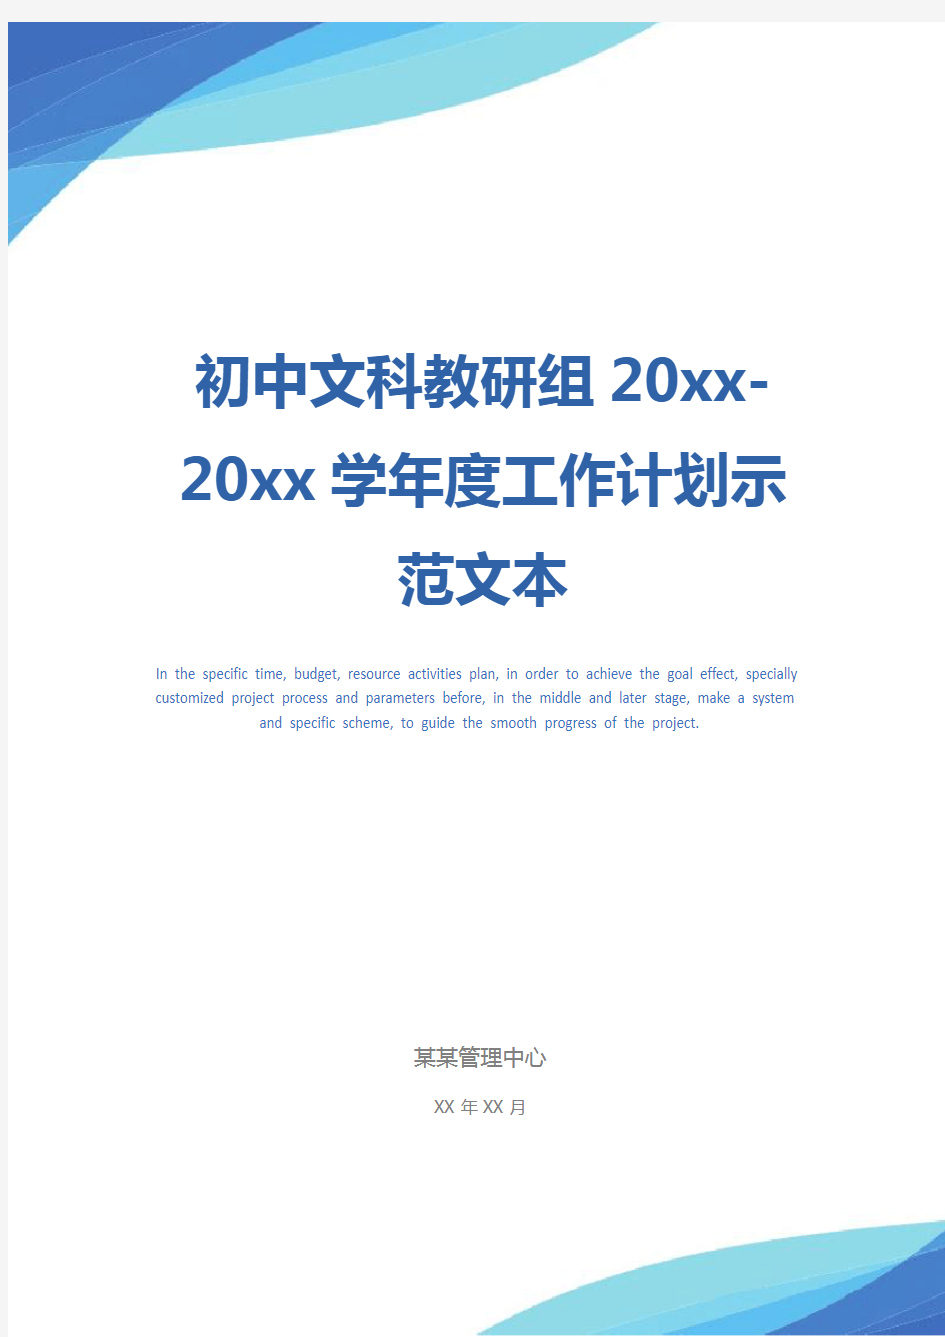 初中文科教研组20xx-20xx学年度工作计划示范文本